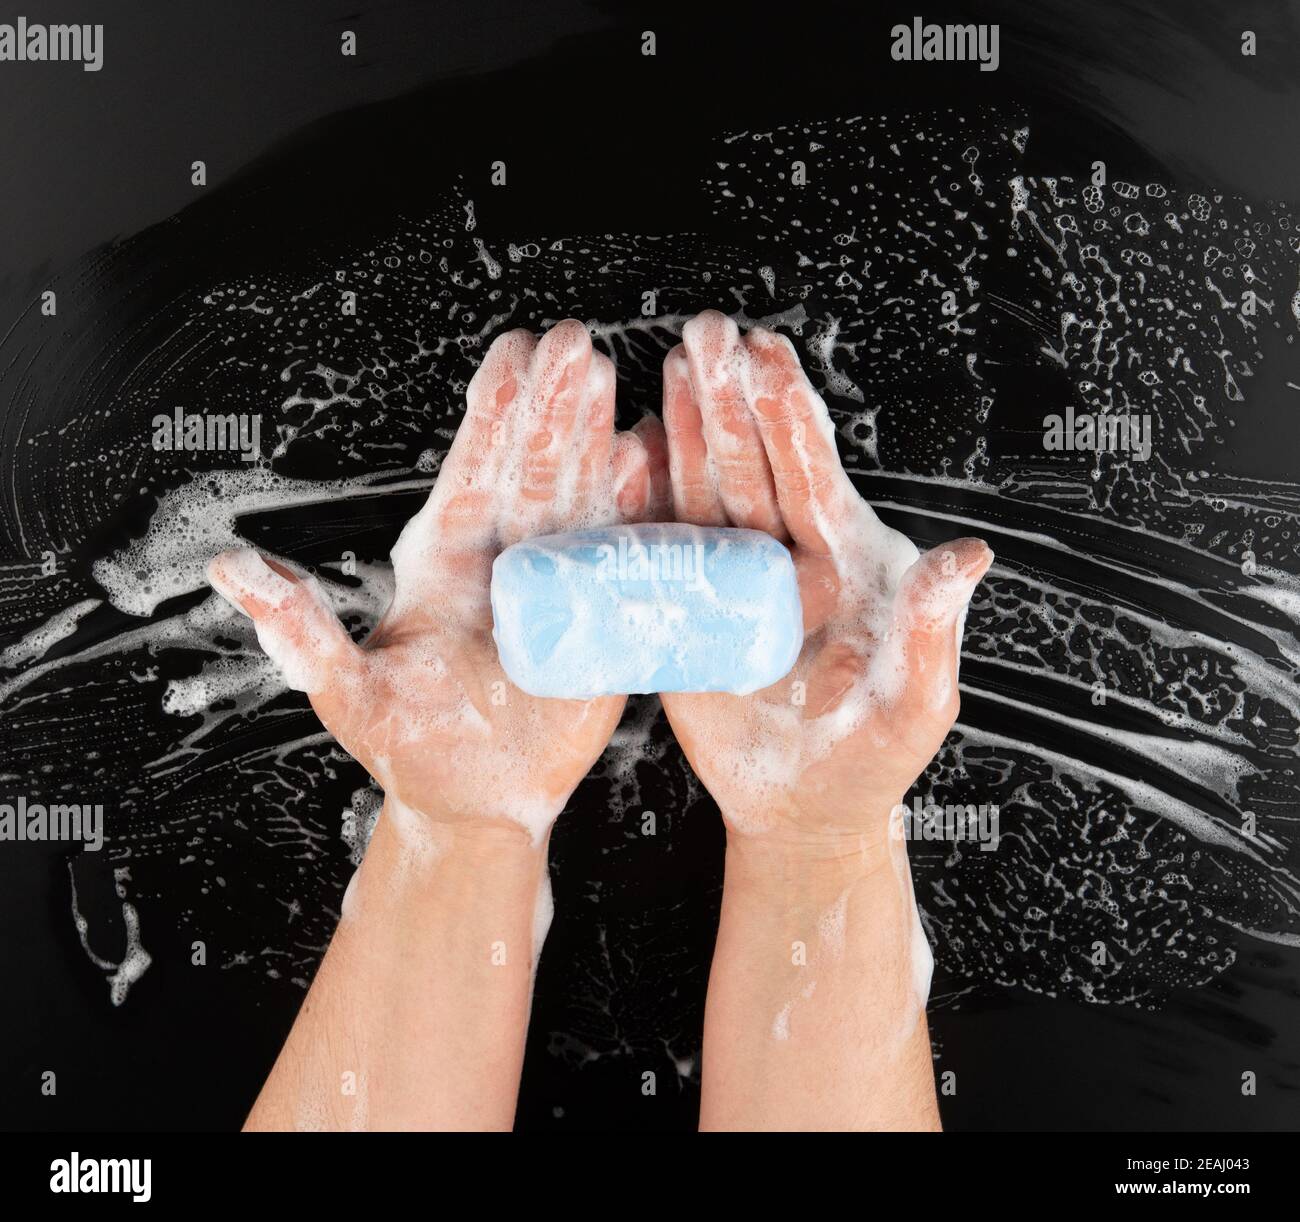 proceso de lavado de manos con jabón azul, partes del cuerpo en espuma blanca sobre fondo negro Foto de stock